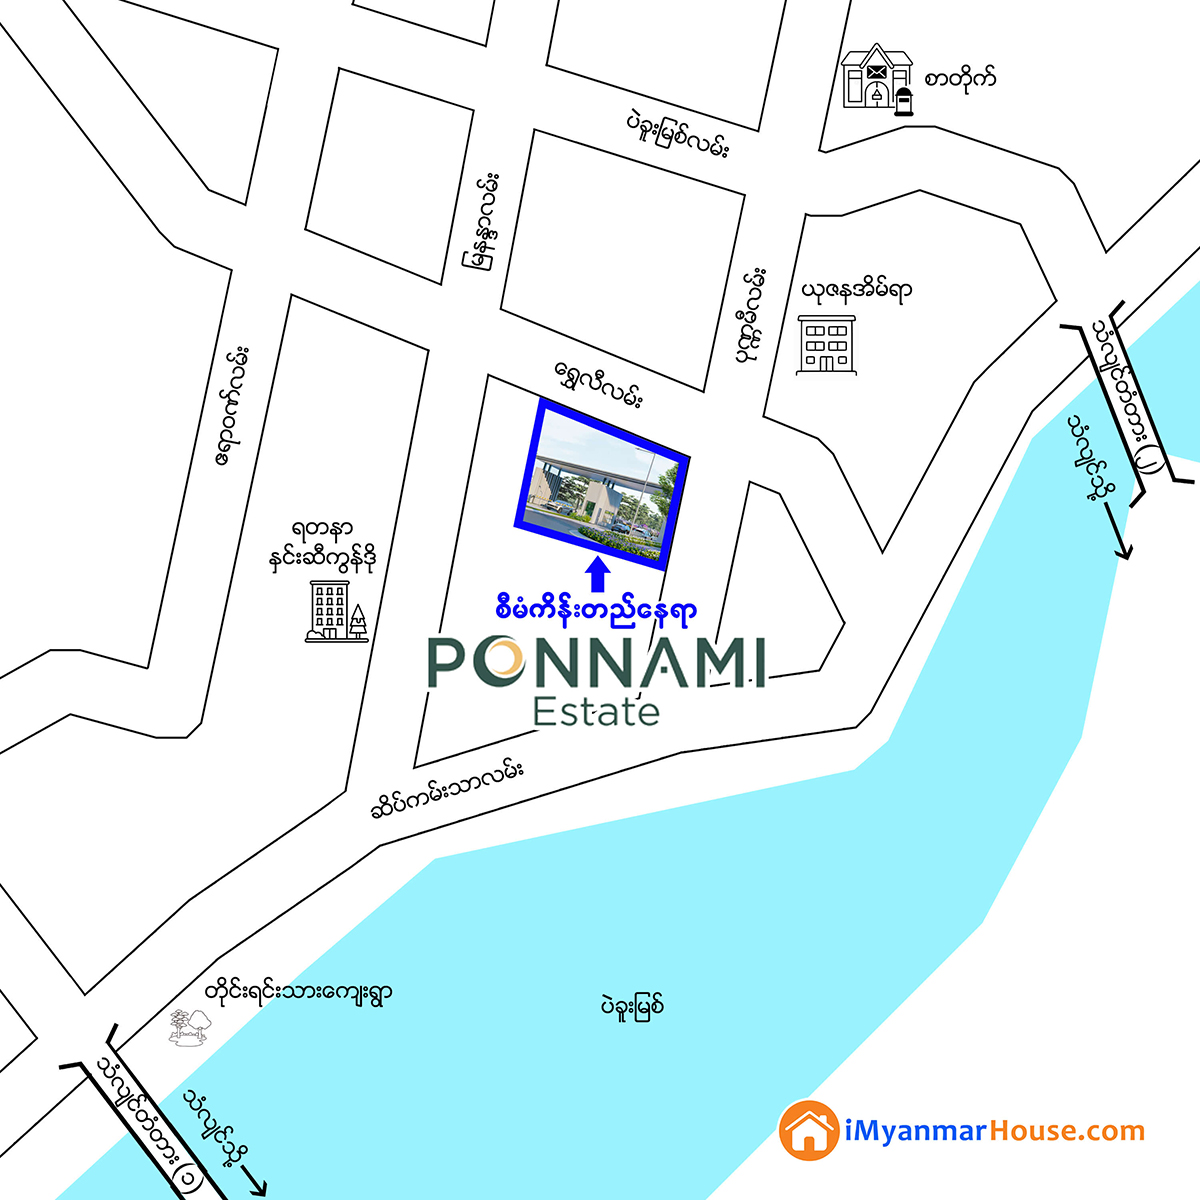 Ponnami Estate